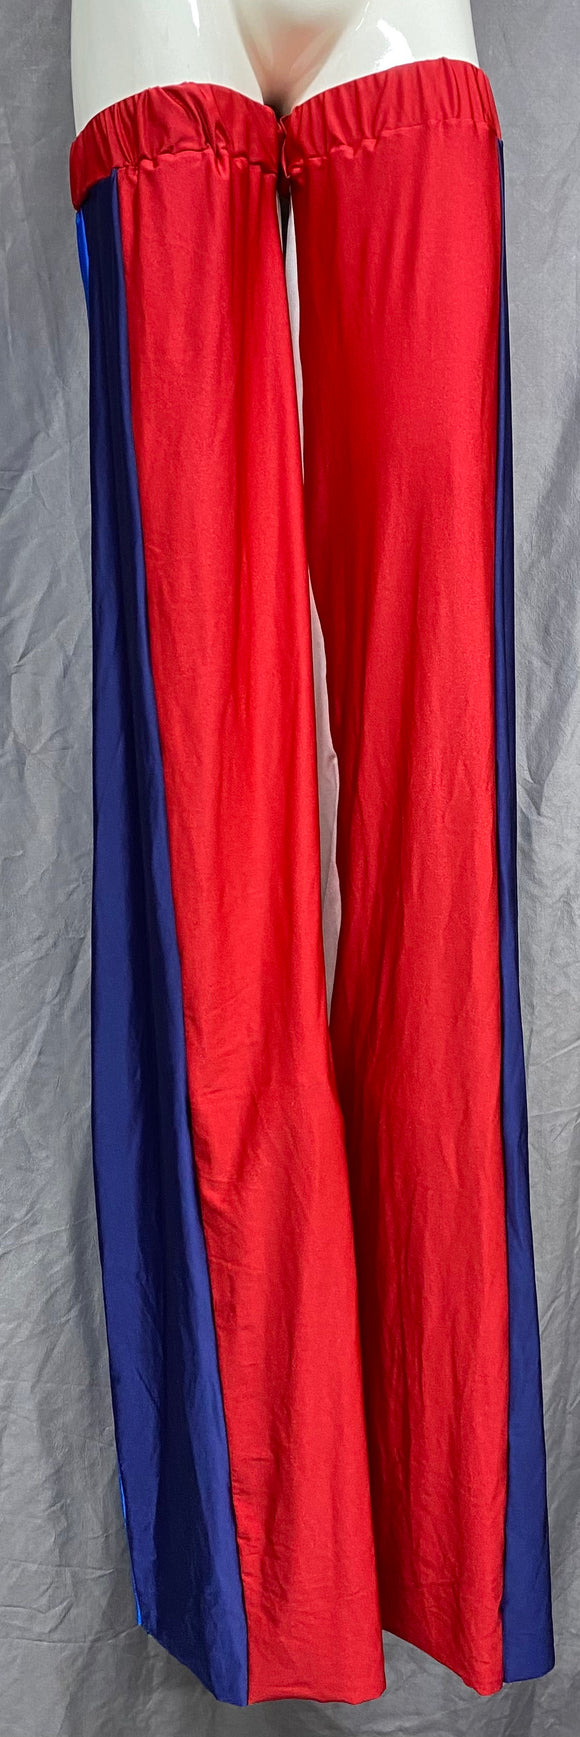 Stilt Covers - Red Blue Navy White 53.5